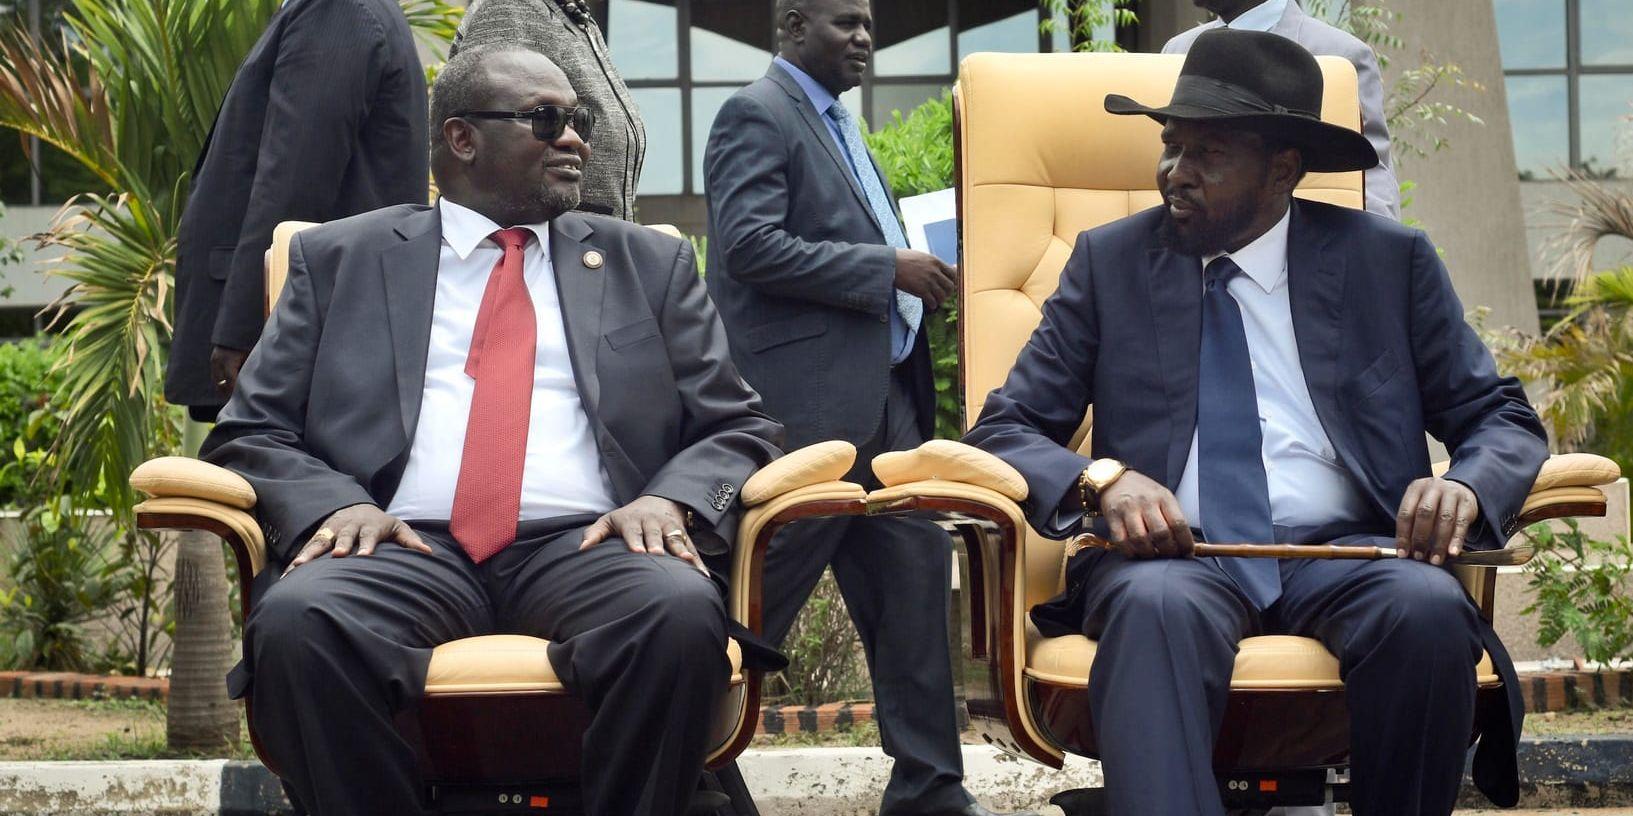 Sydsudans tidigare vicepresident Riek Machar, till vänster, tillsammans med landets president Salva Kiir efter rivalernas möte i Juba i april 2016. Arkvibild.